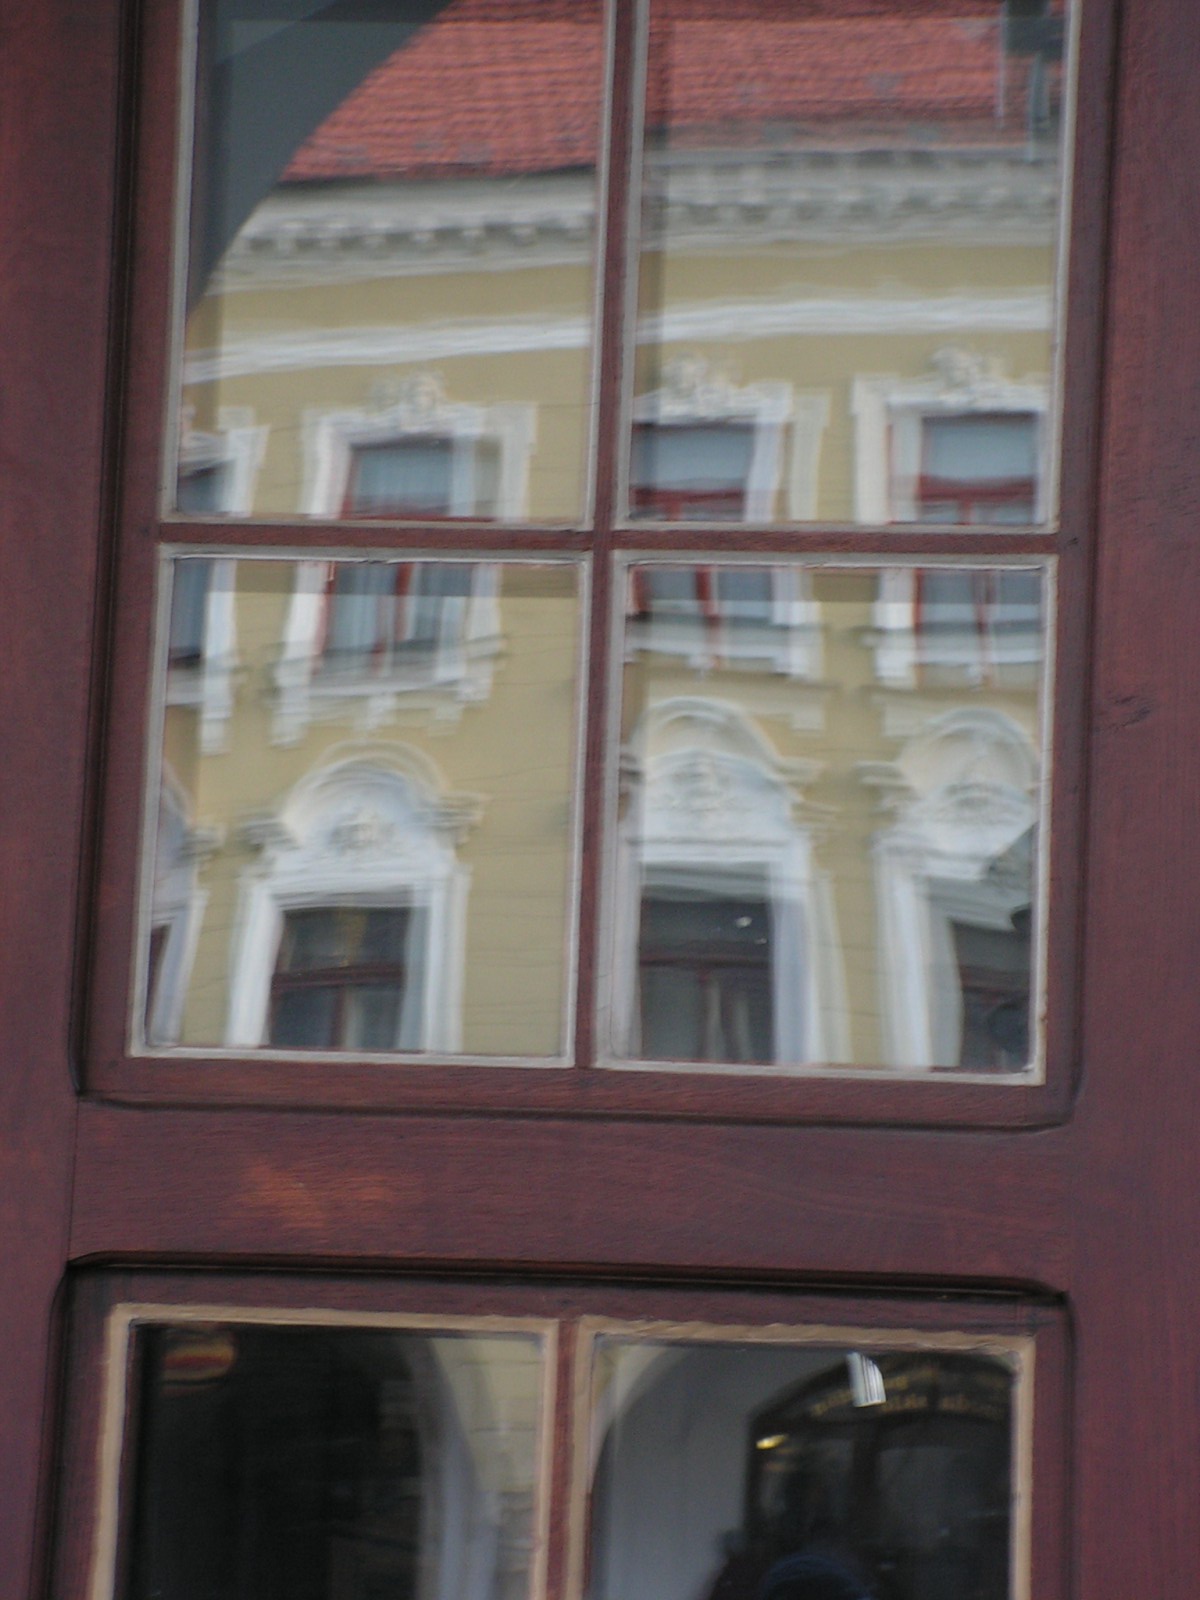 Okno v okně